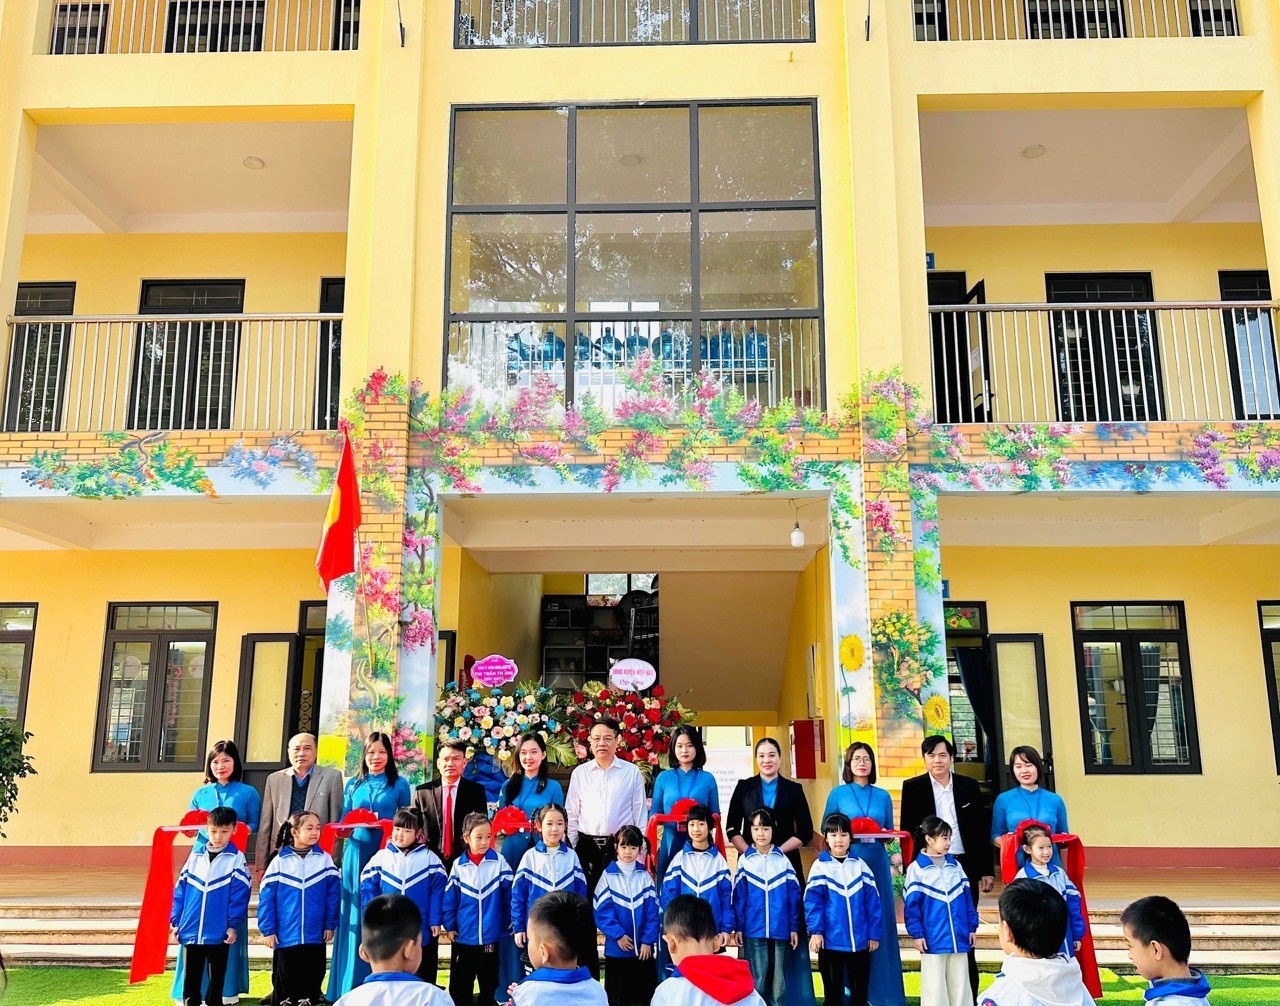 PV GAS tài trợ xây dựng công trình khối nhà lớp học cho trường Tiểu học thị trấn Thắng, huyện Hiệp Hòa, tỉnh Bắc Giang.